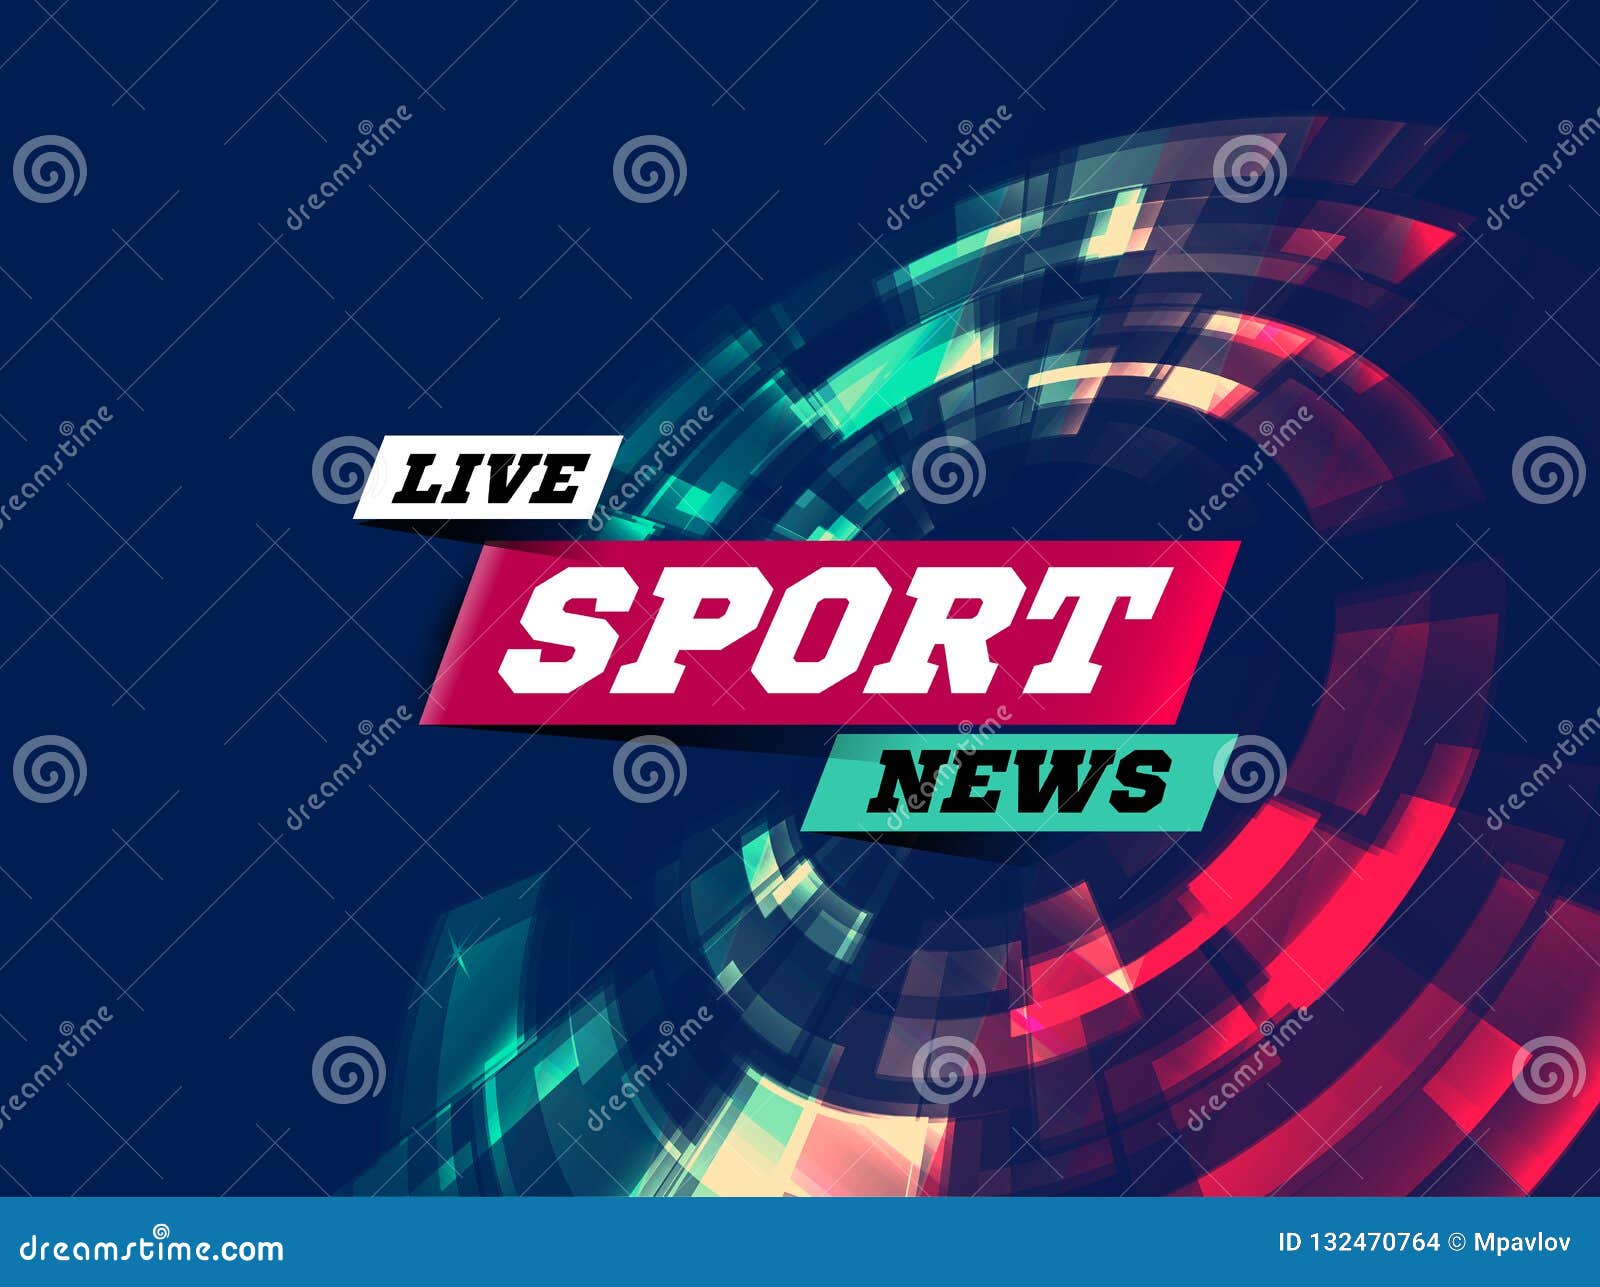 Live Sport News Can Wird Als Entwurf Für Fernsehnachrichten, Die Internet-Medien Verwendet Und Landet Seite Vektor Vektor Abbildung